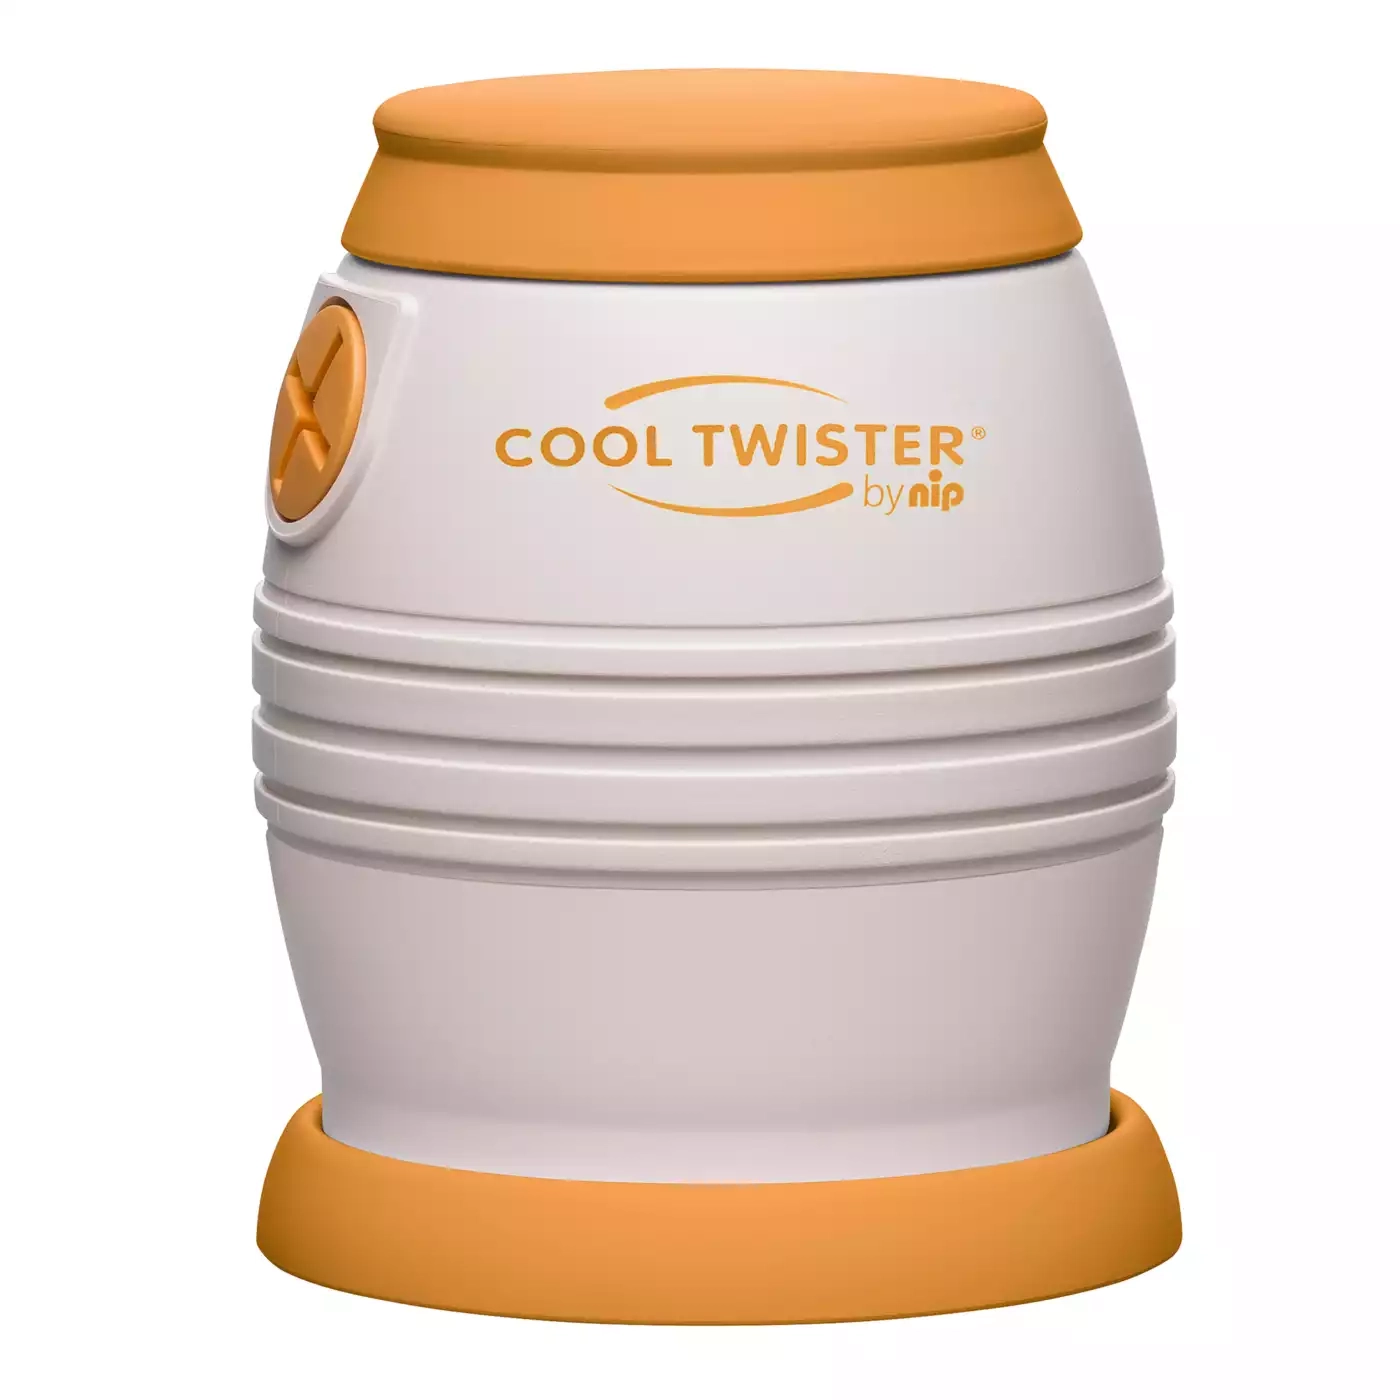 Cool Twister Fläschchenwasser-Abkühler nip 2000573056303 1